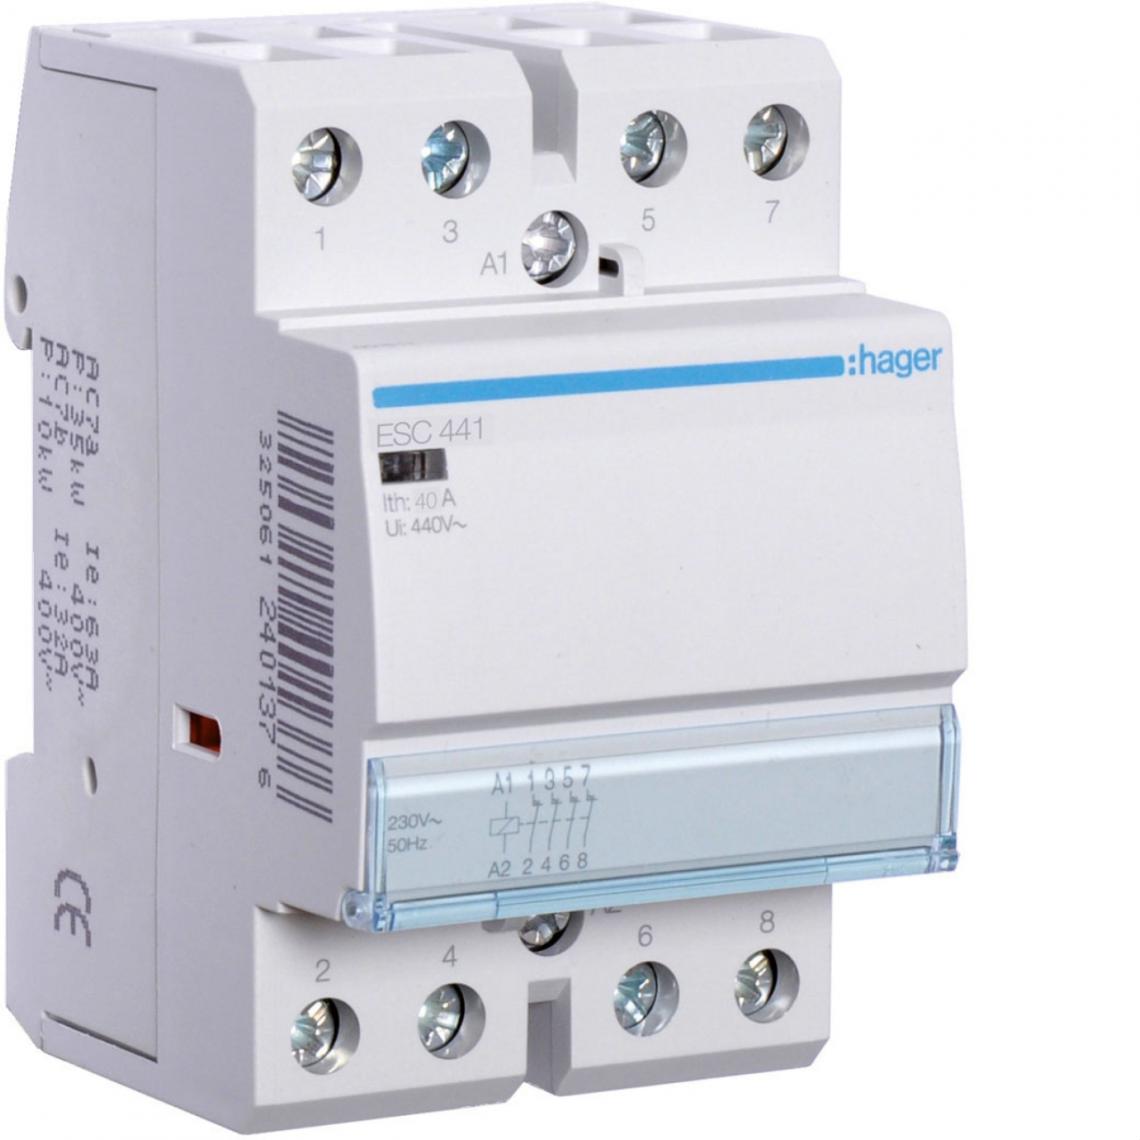 Hager - contacteur modulaire tertiaire - 40a - 4 contacts no - 230v - hager esc441 - Télérupteurs, minuteries et horloges